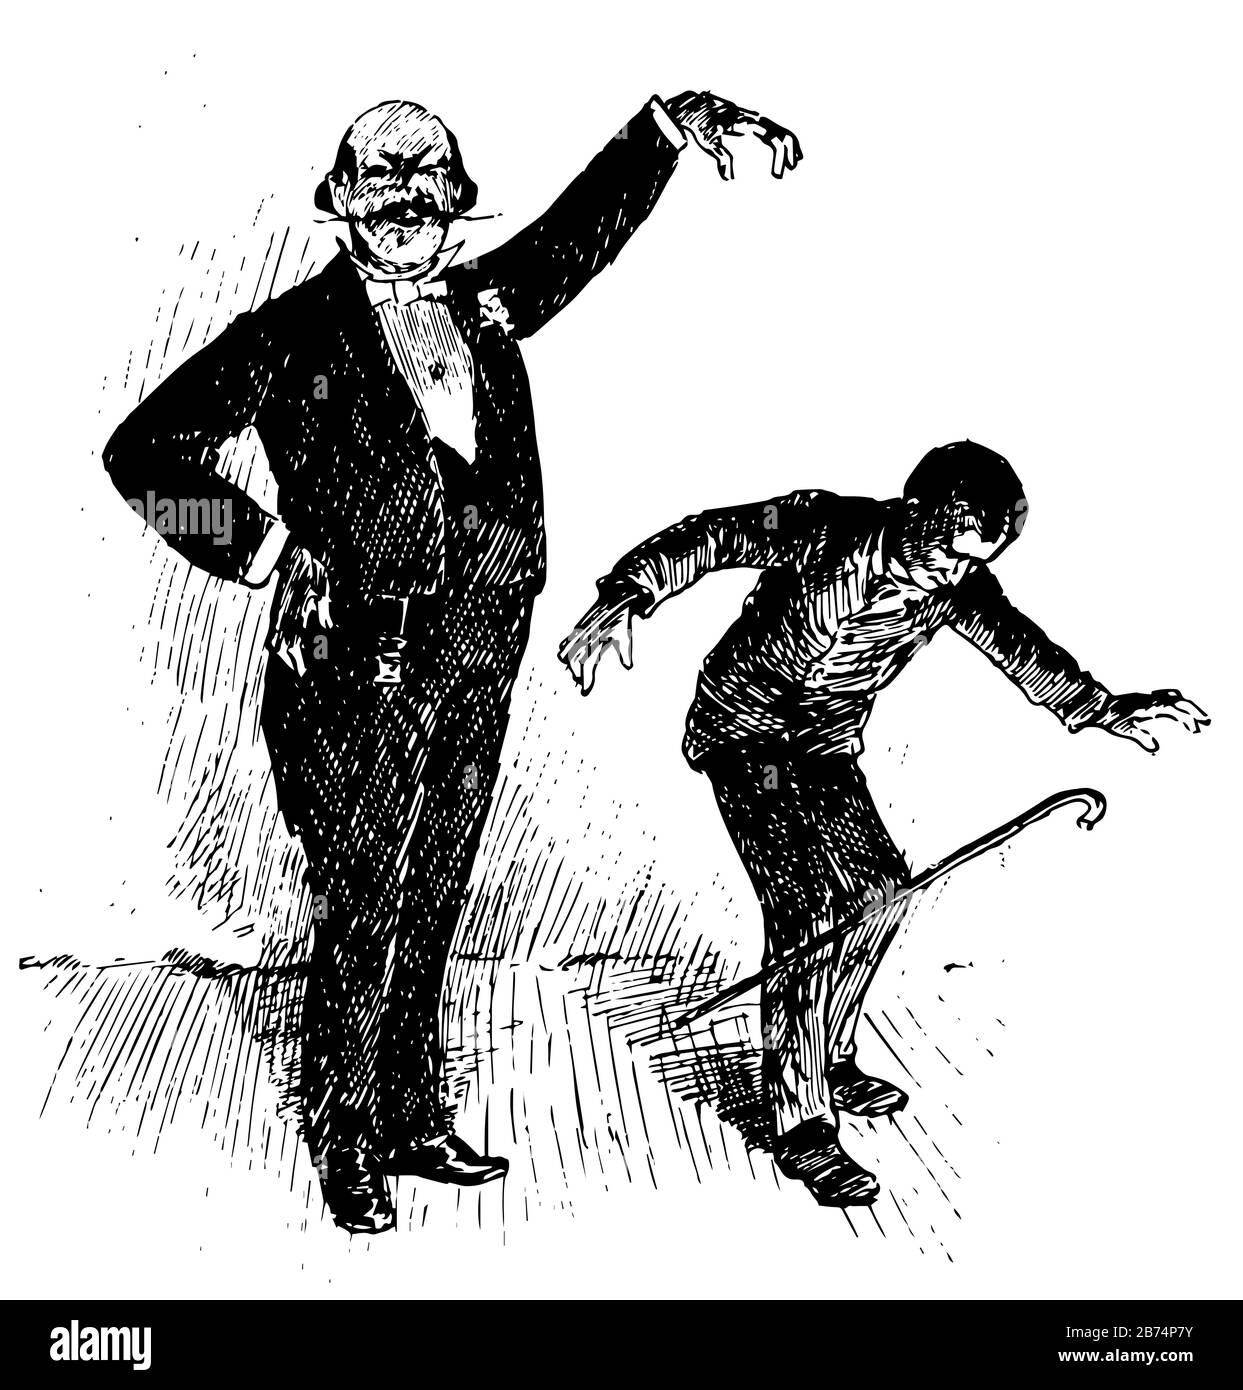 A Boy's Town, diese Szene zeigt einen alten Mann und einen Jungen, ein alter Mann hebt eine Hand und bleibt in der Luft, ein Junge verbogen, Vintage-Linie Zeichnung oder Gravur il Stock Vektor